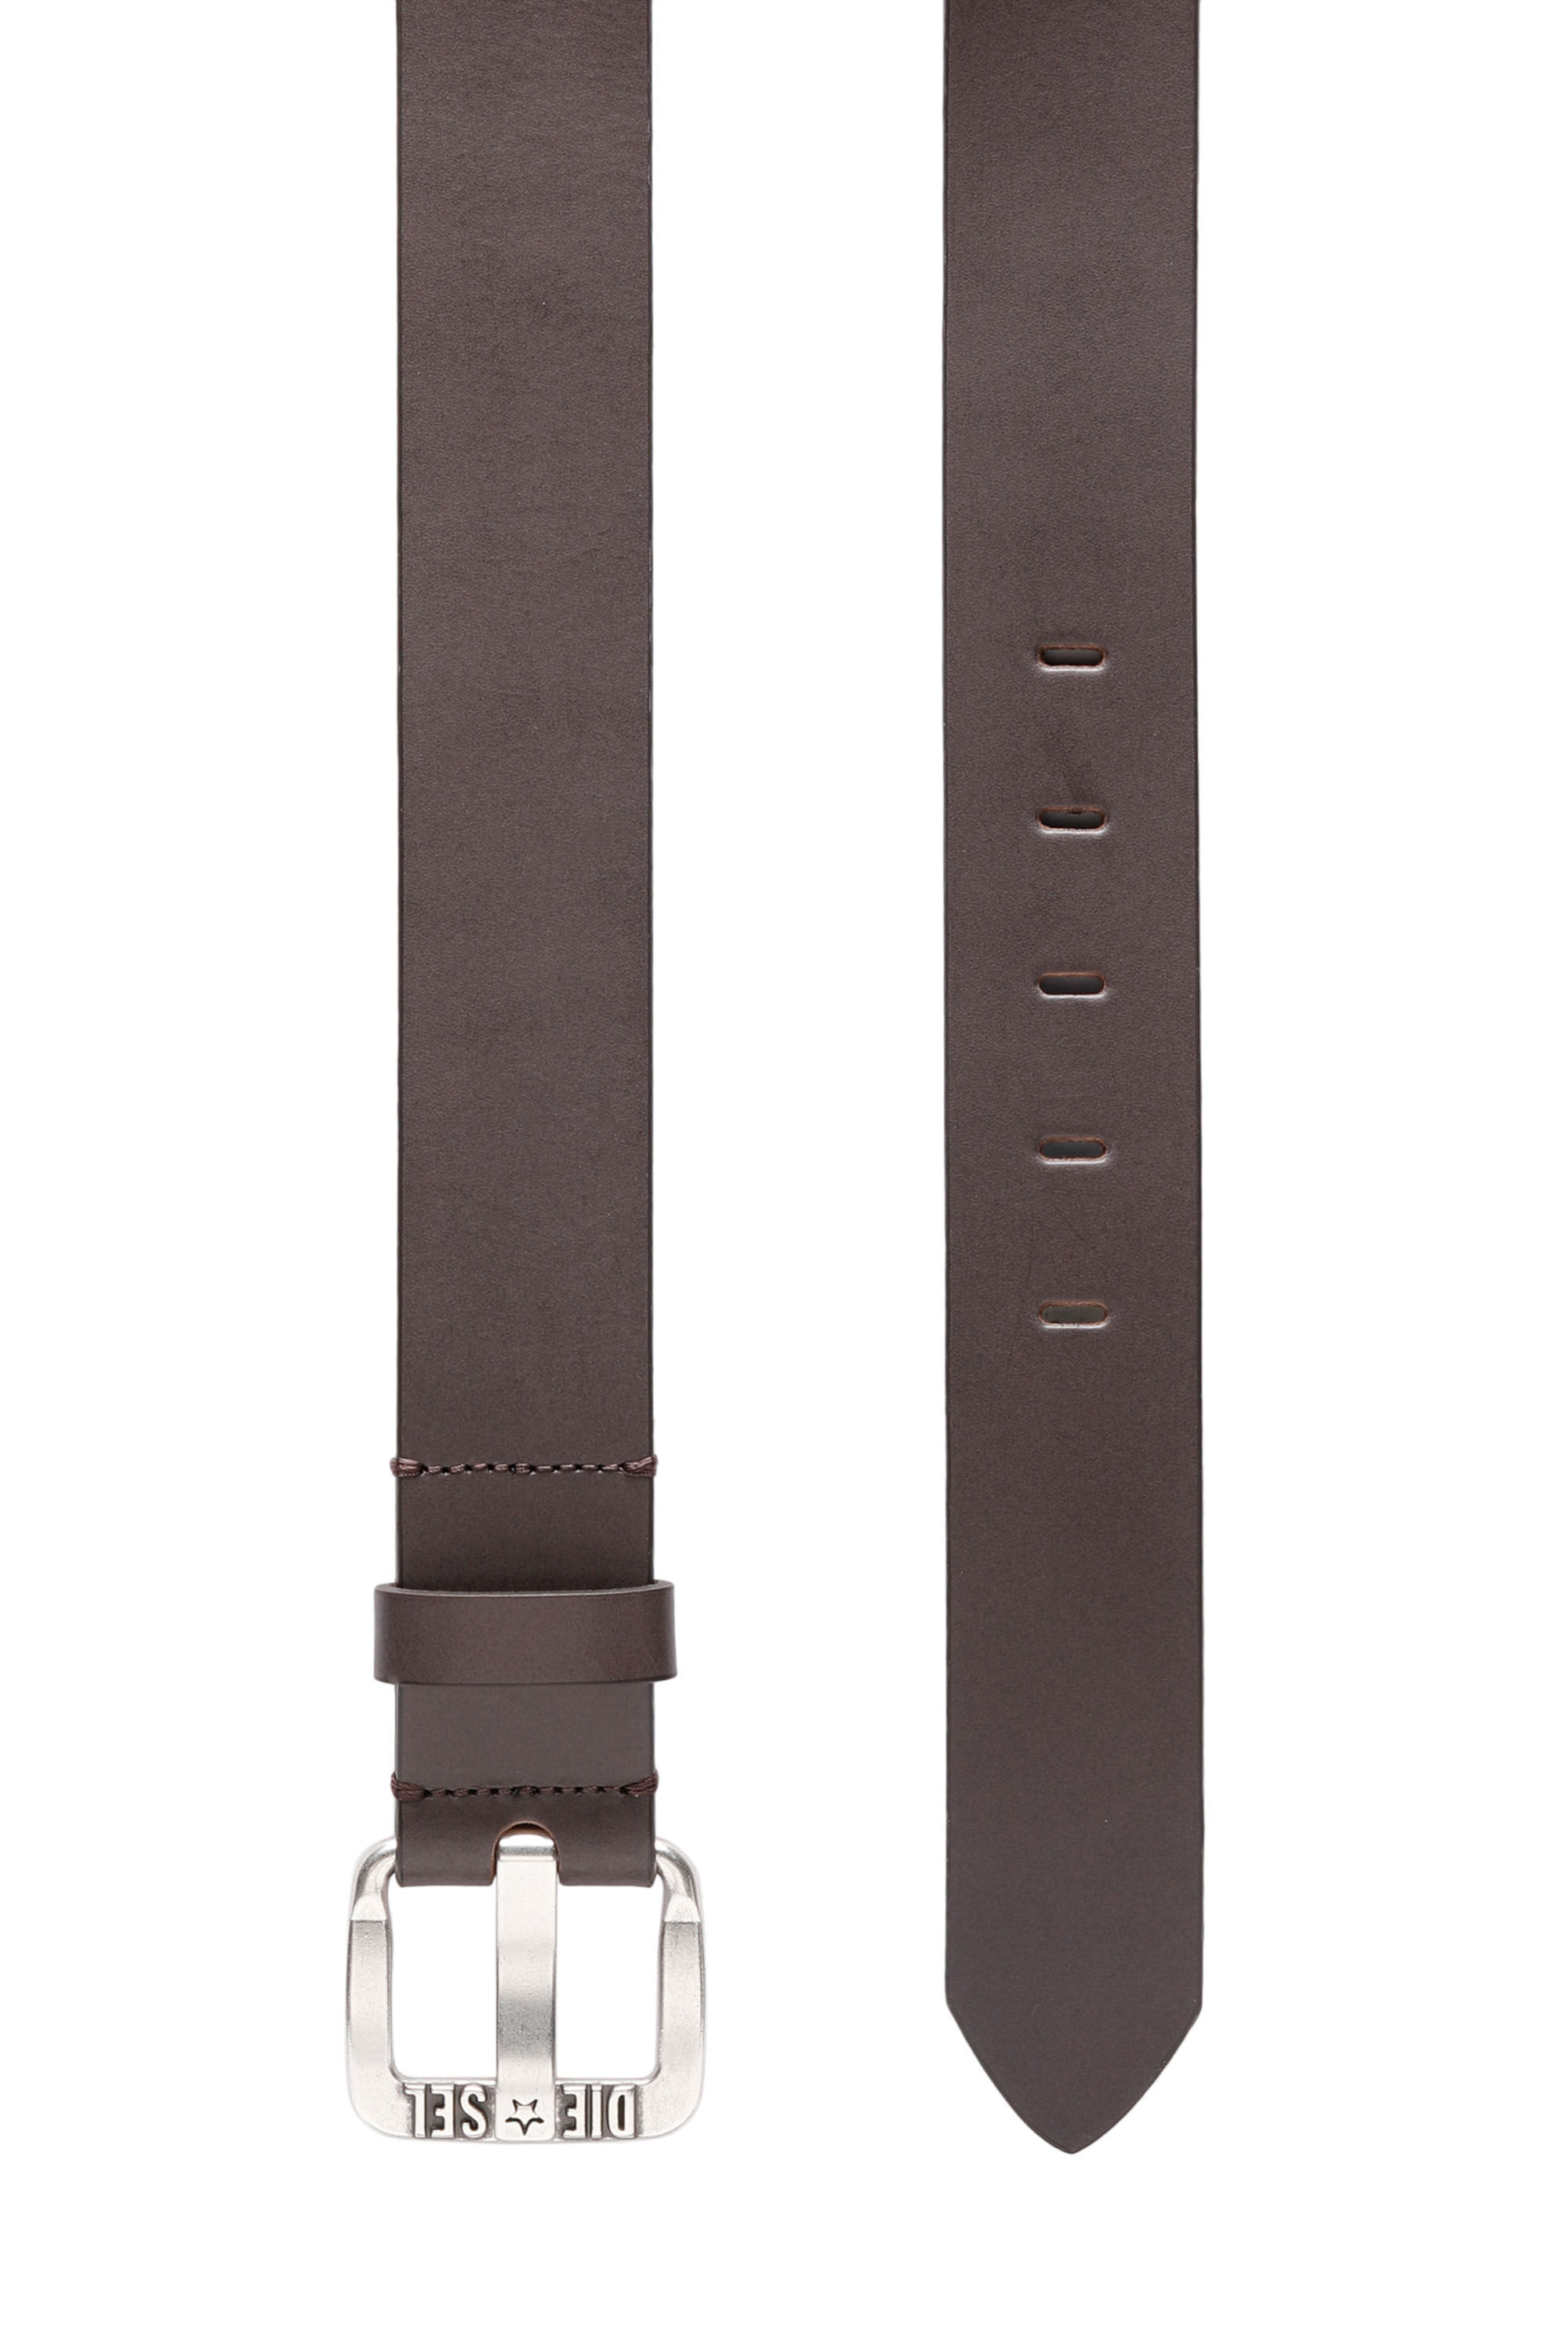 Diesel - B-STAR II, Man Leather belt with metal star logo buckle in Brown - Image 3